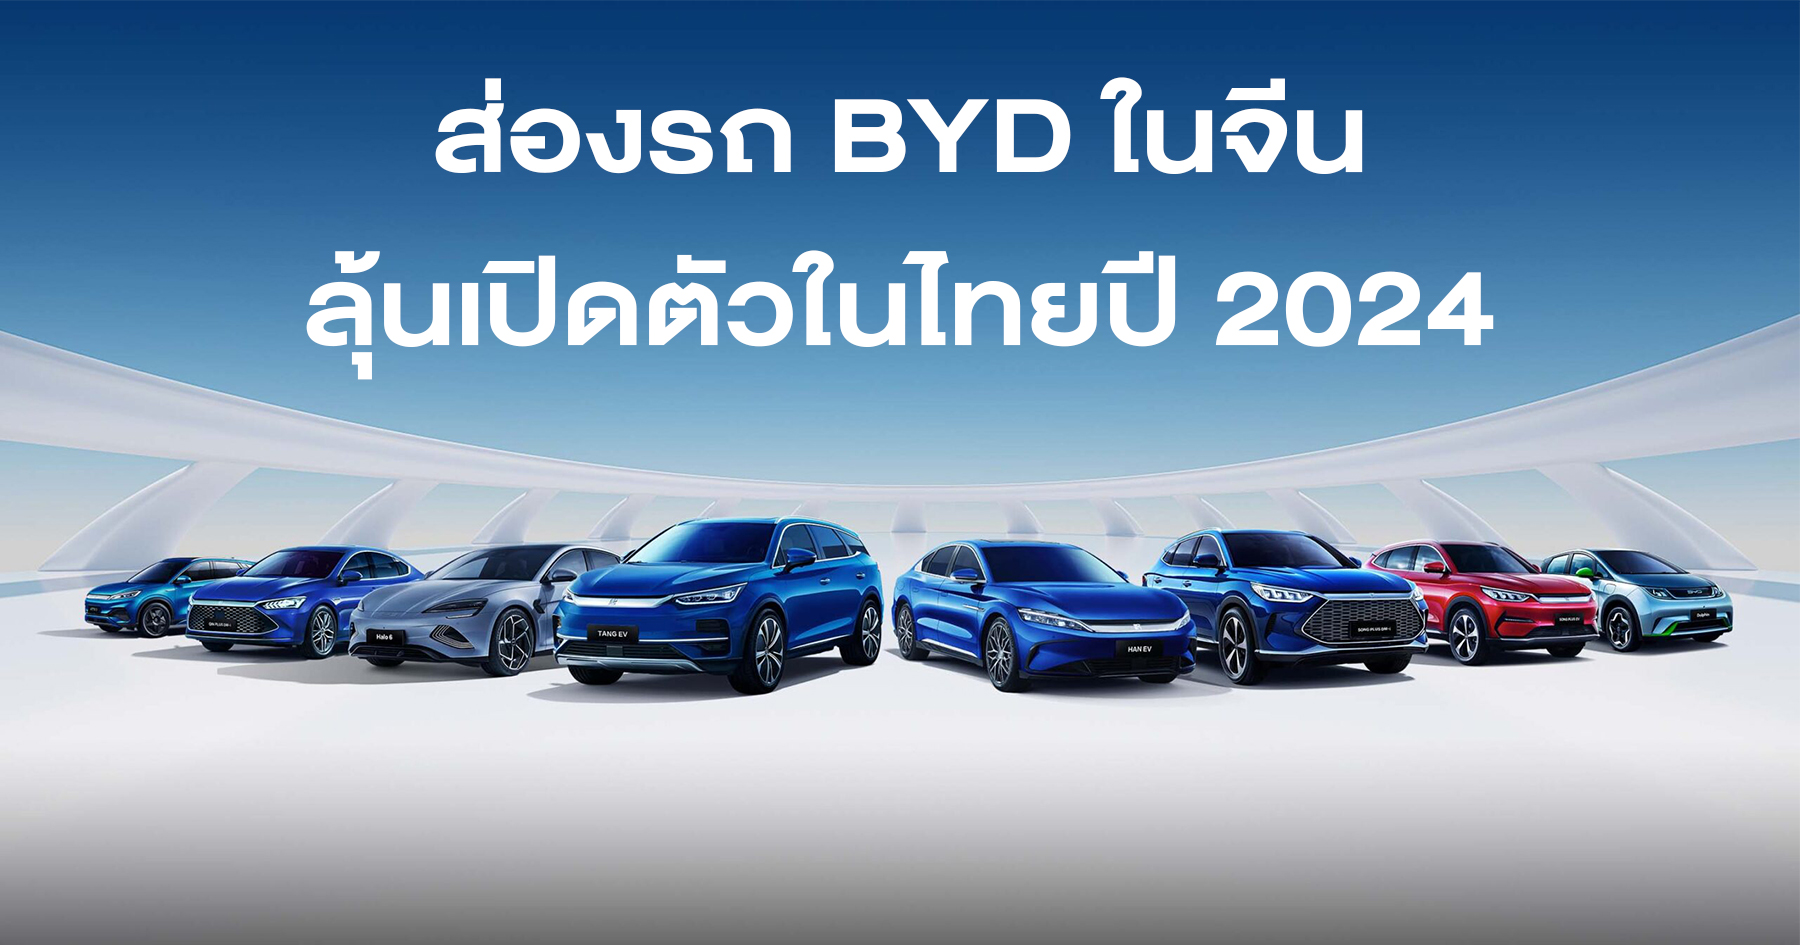 BYD Seal U รถ SUV ไฟฟ้ารุ่นใหญ่กว่า Atto 3 ลุ้นขายไทยปีหน้า